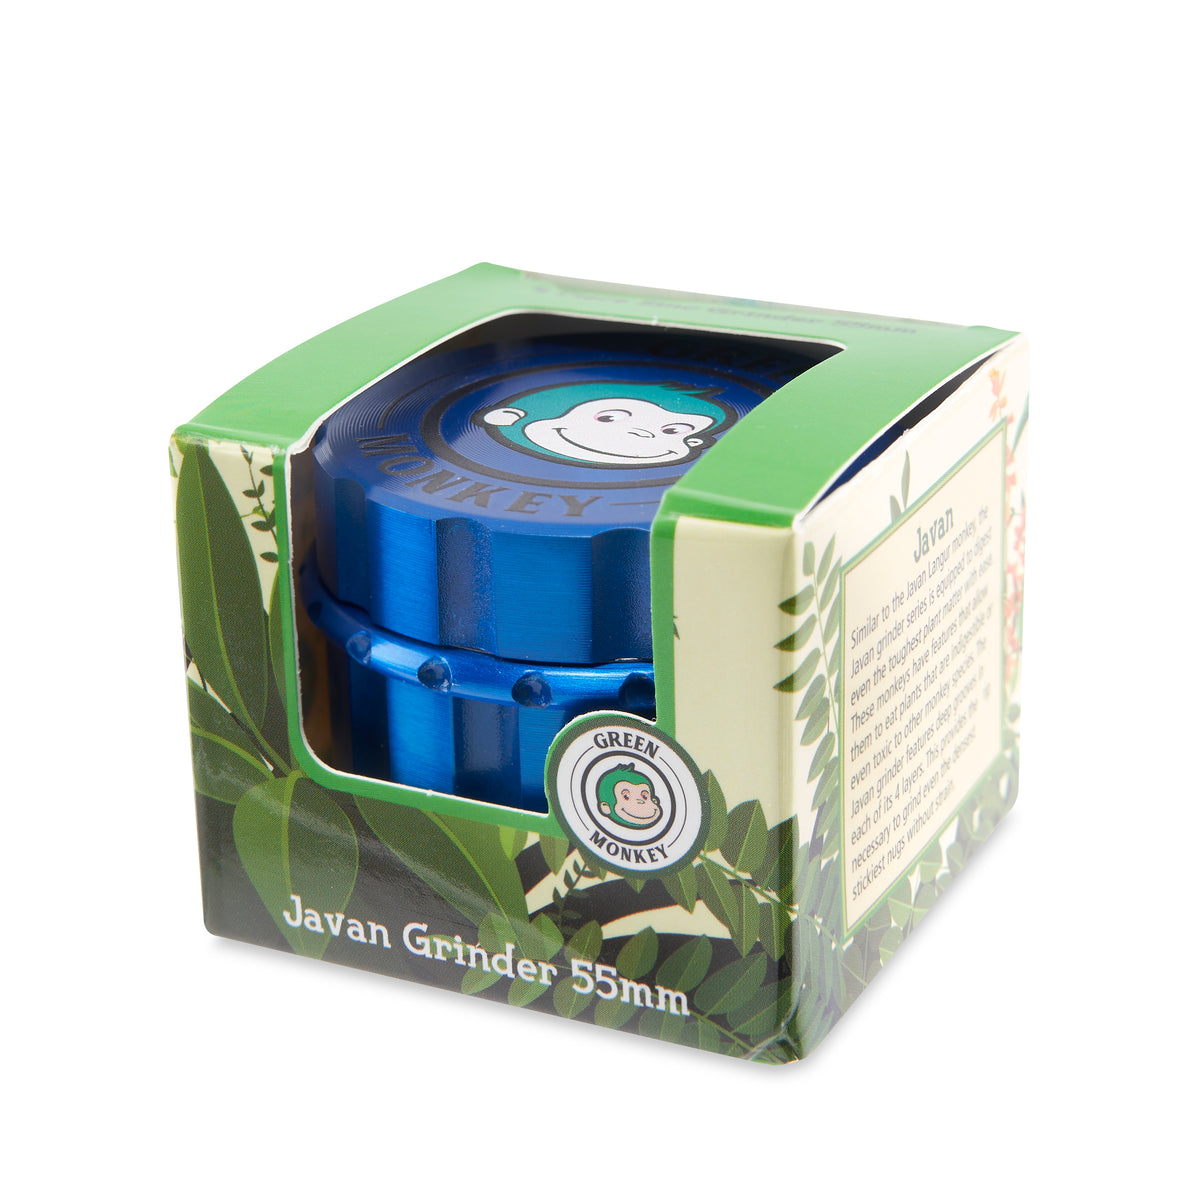 Green Monkey Grinder - Javan - 55mm - Blue